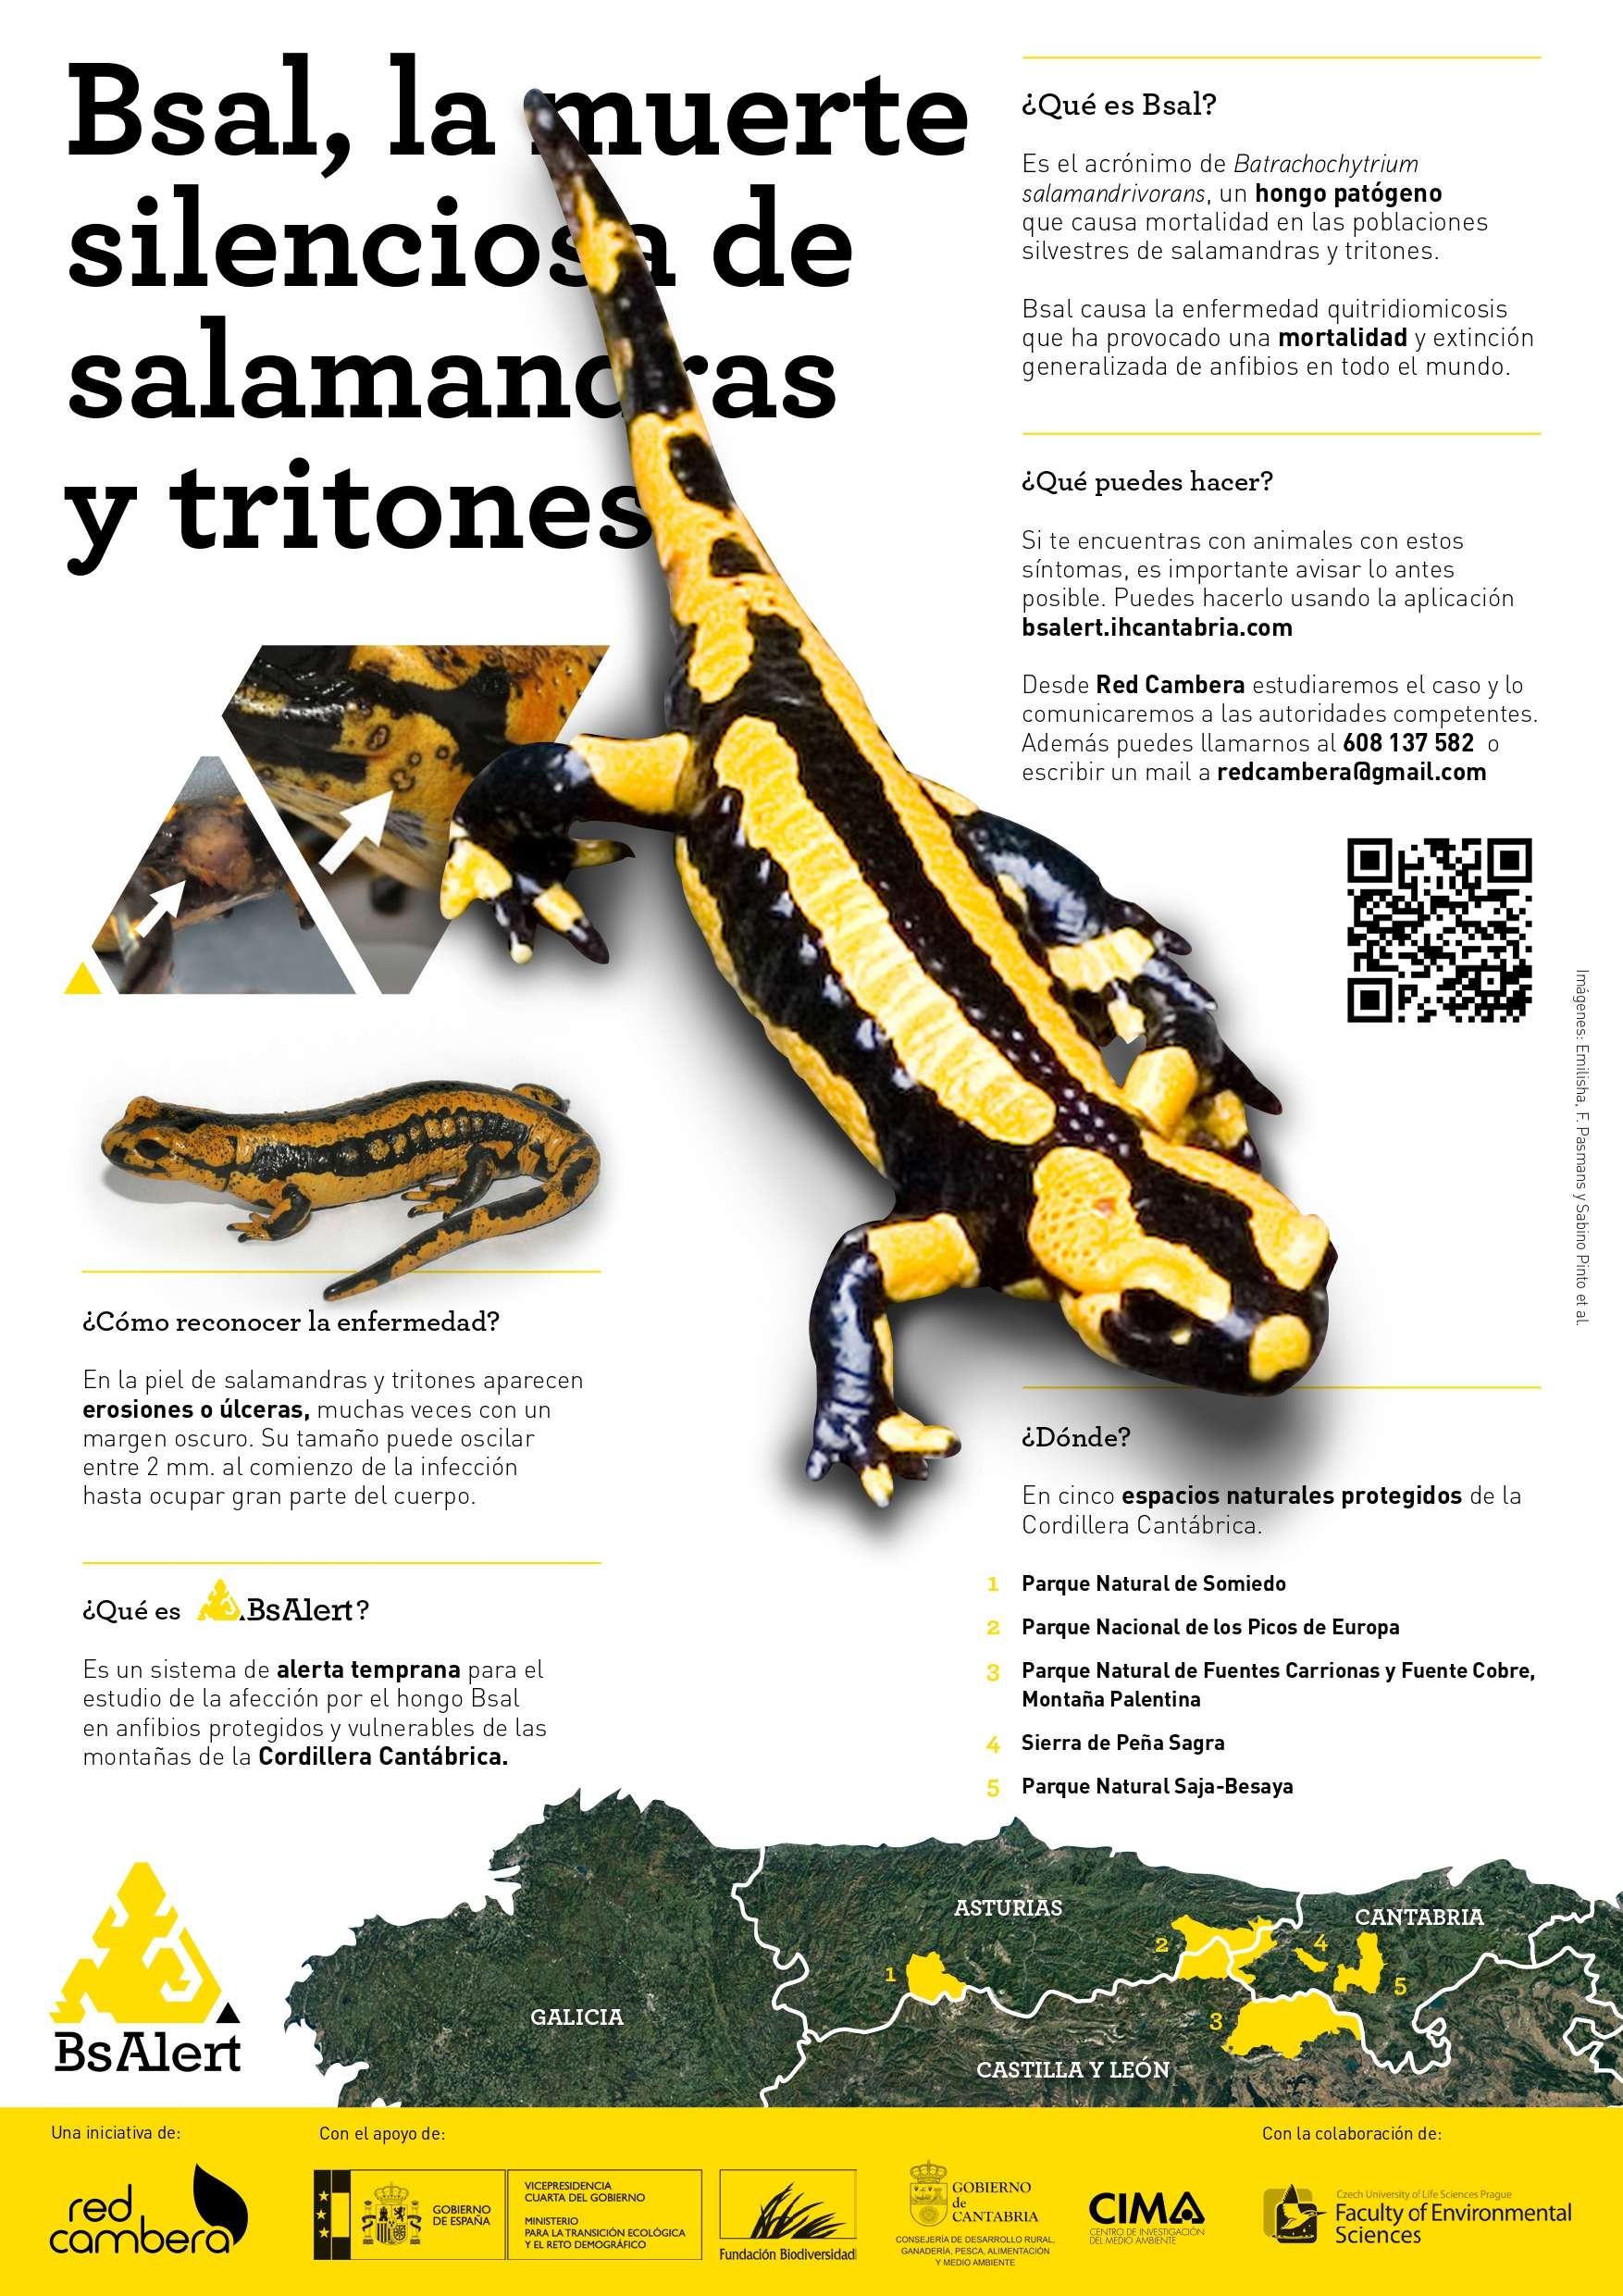 Bsal, la muerte silenciosa de salamandras y tritones (cartel)